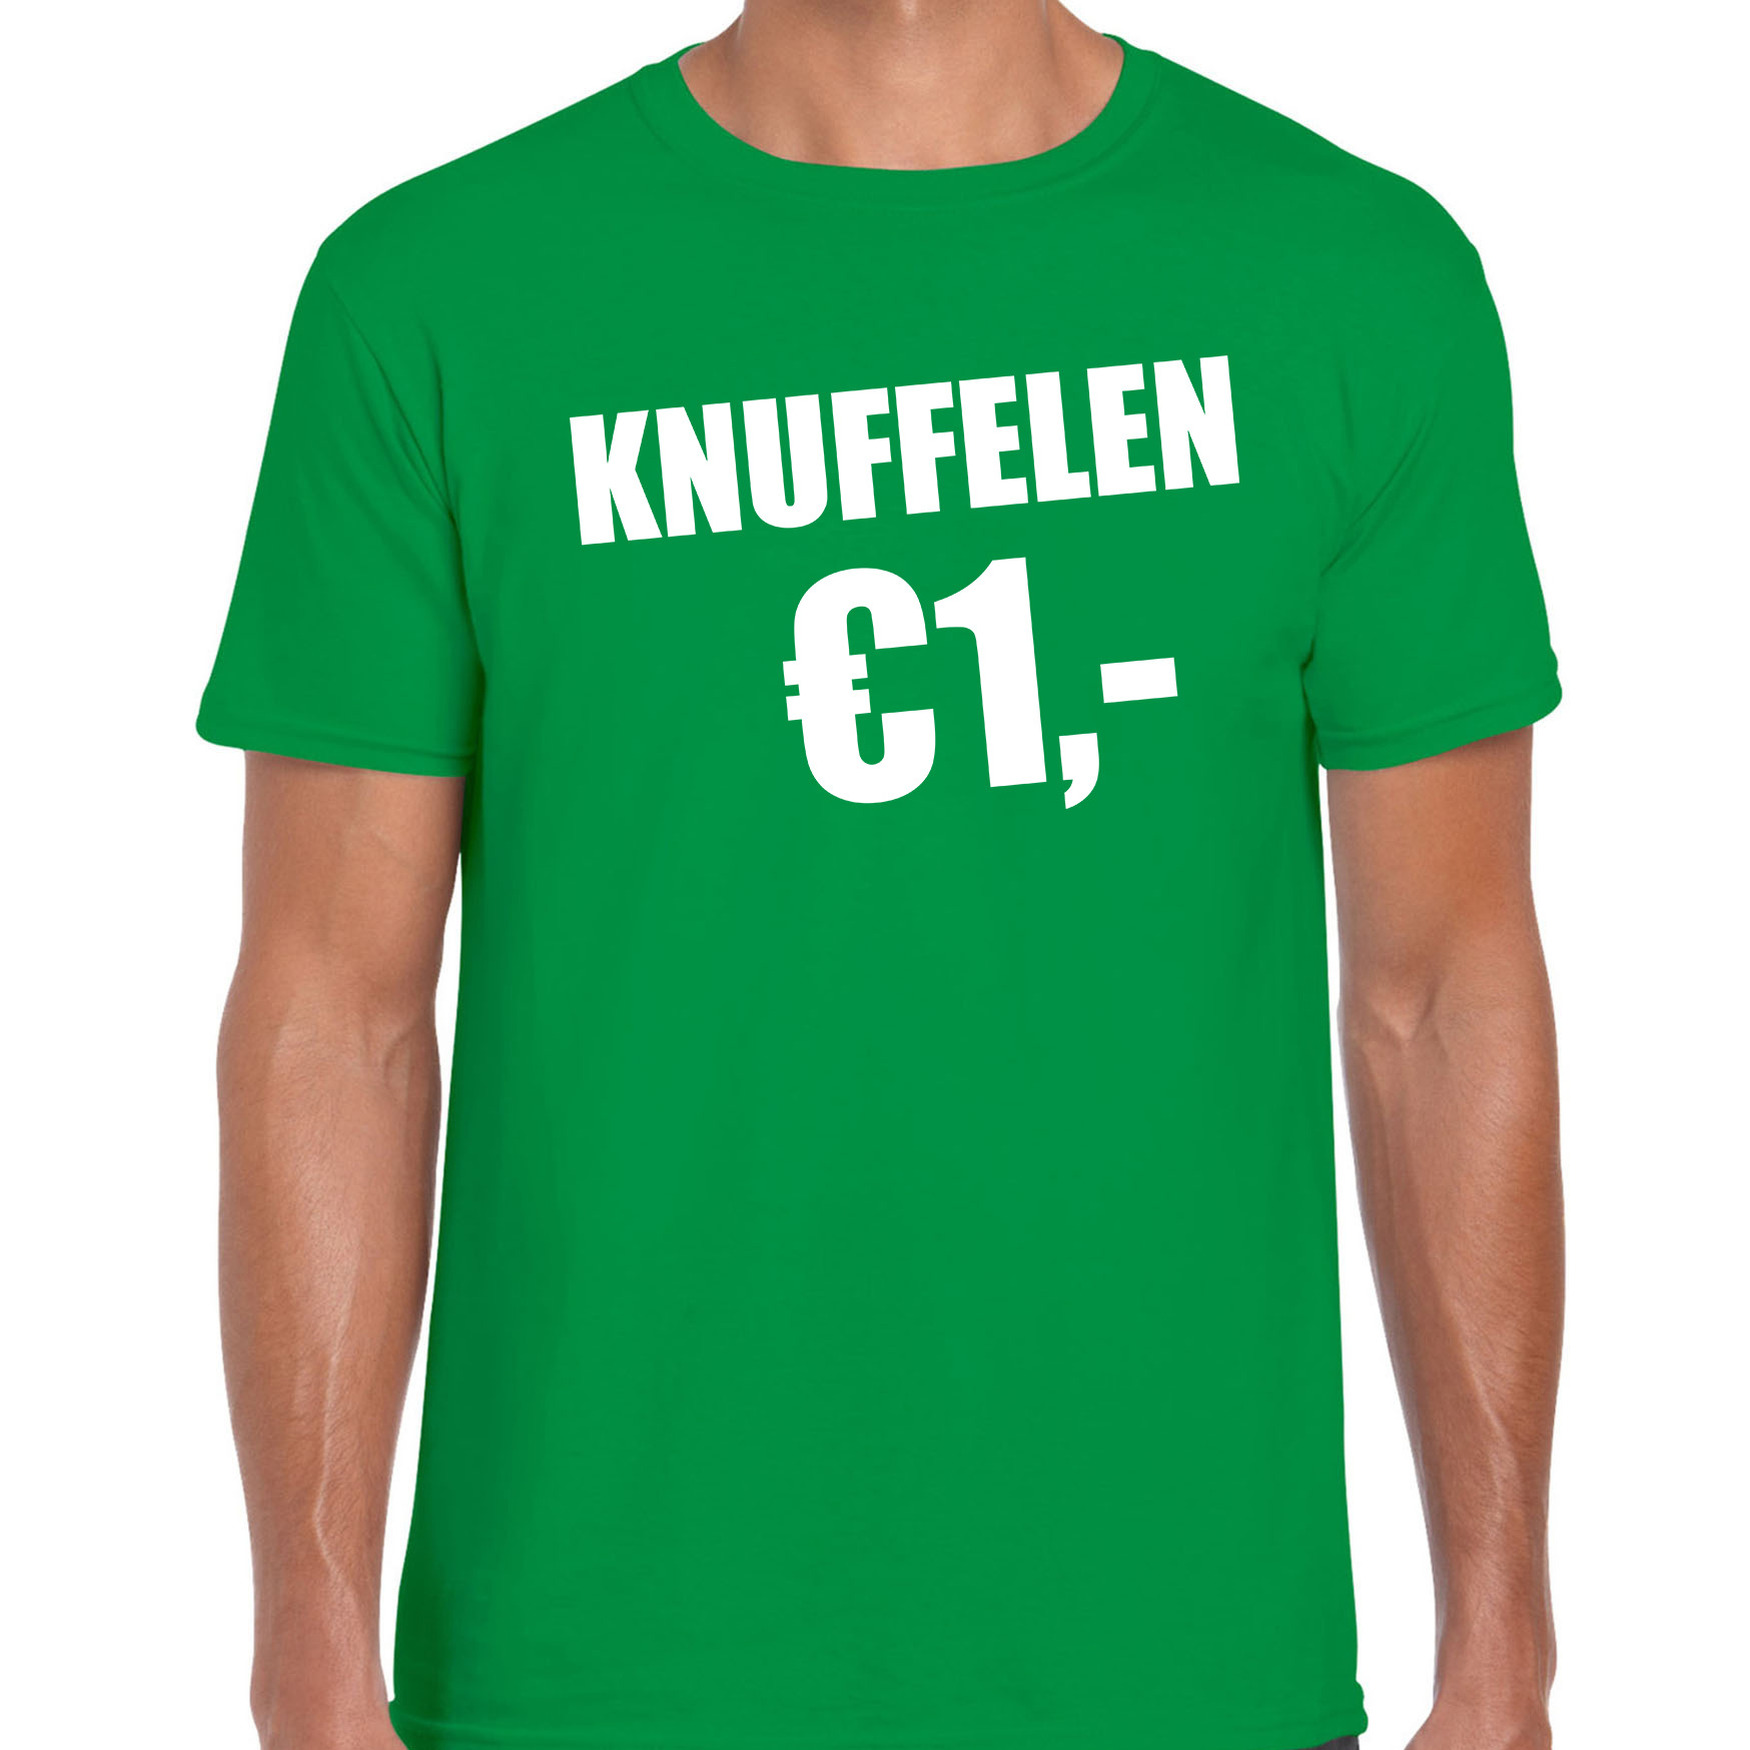 Fun t-shirt knuffelen 1 euro groen voor heren